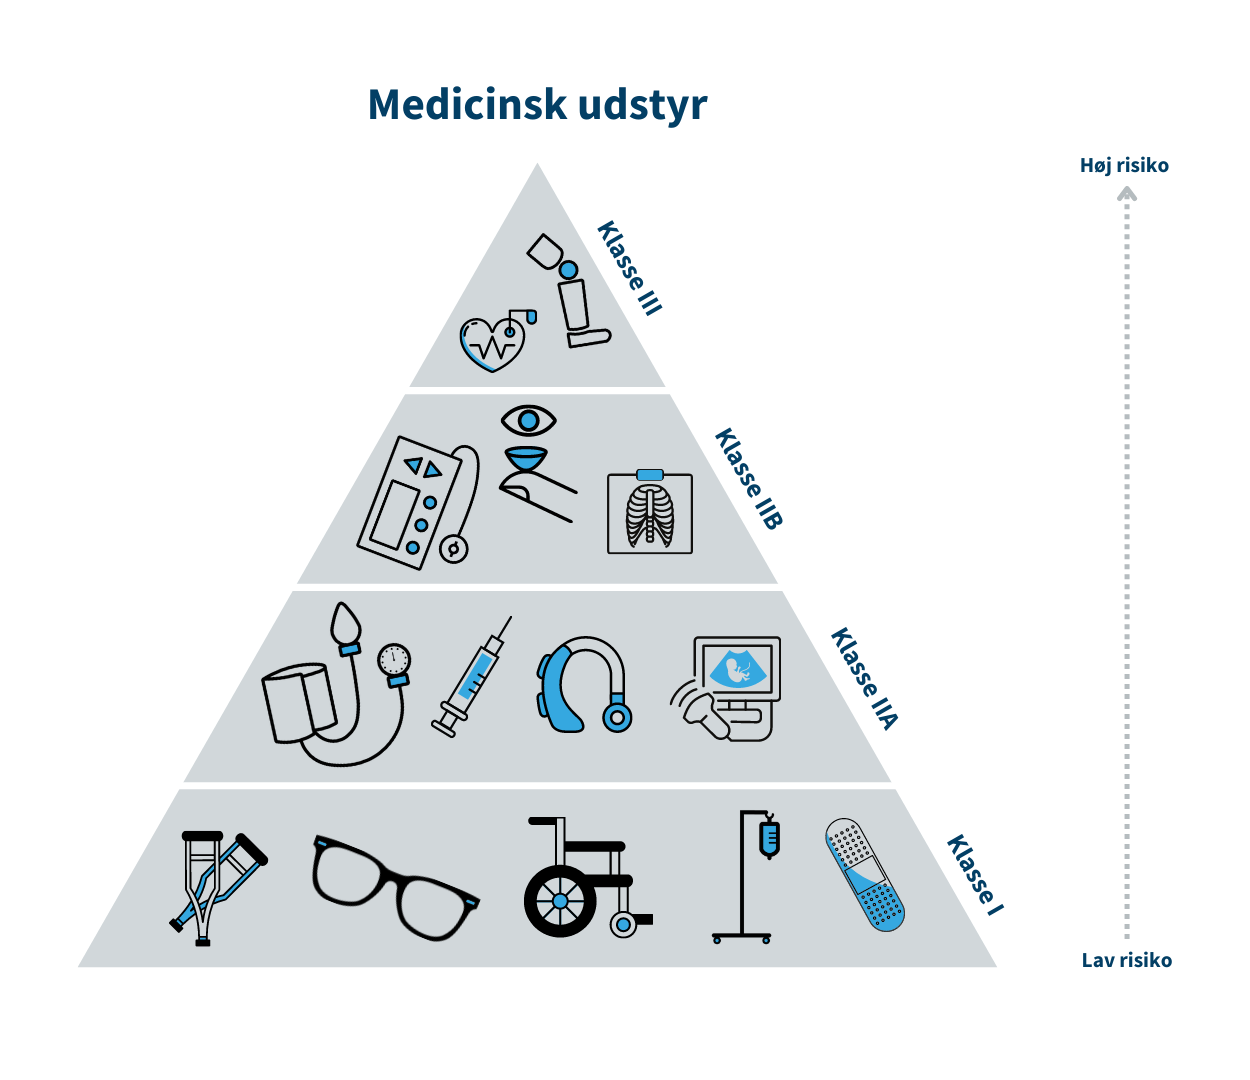 Pyramideformet visualisering af de fire klasser indenfor medicinsk udstyr